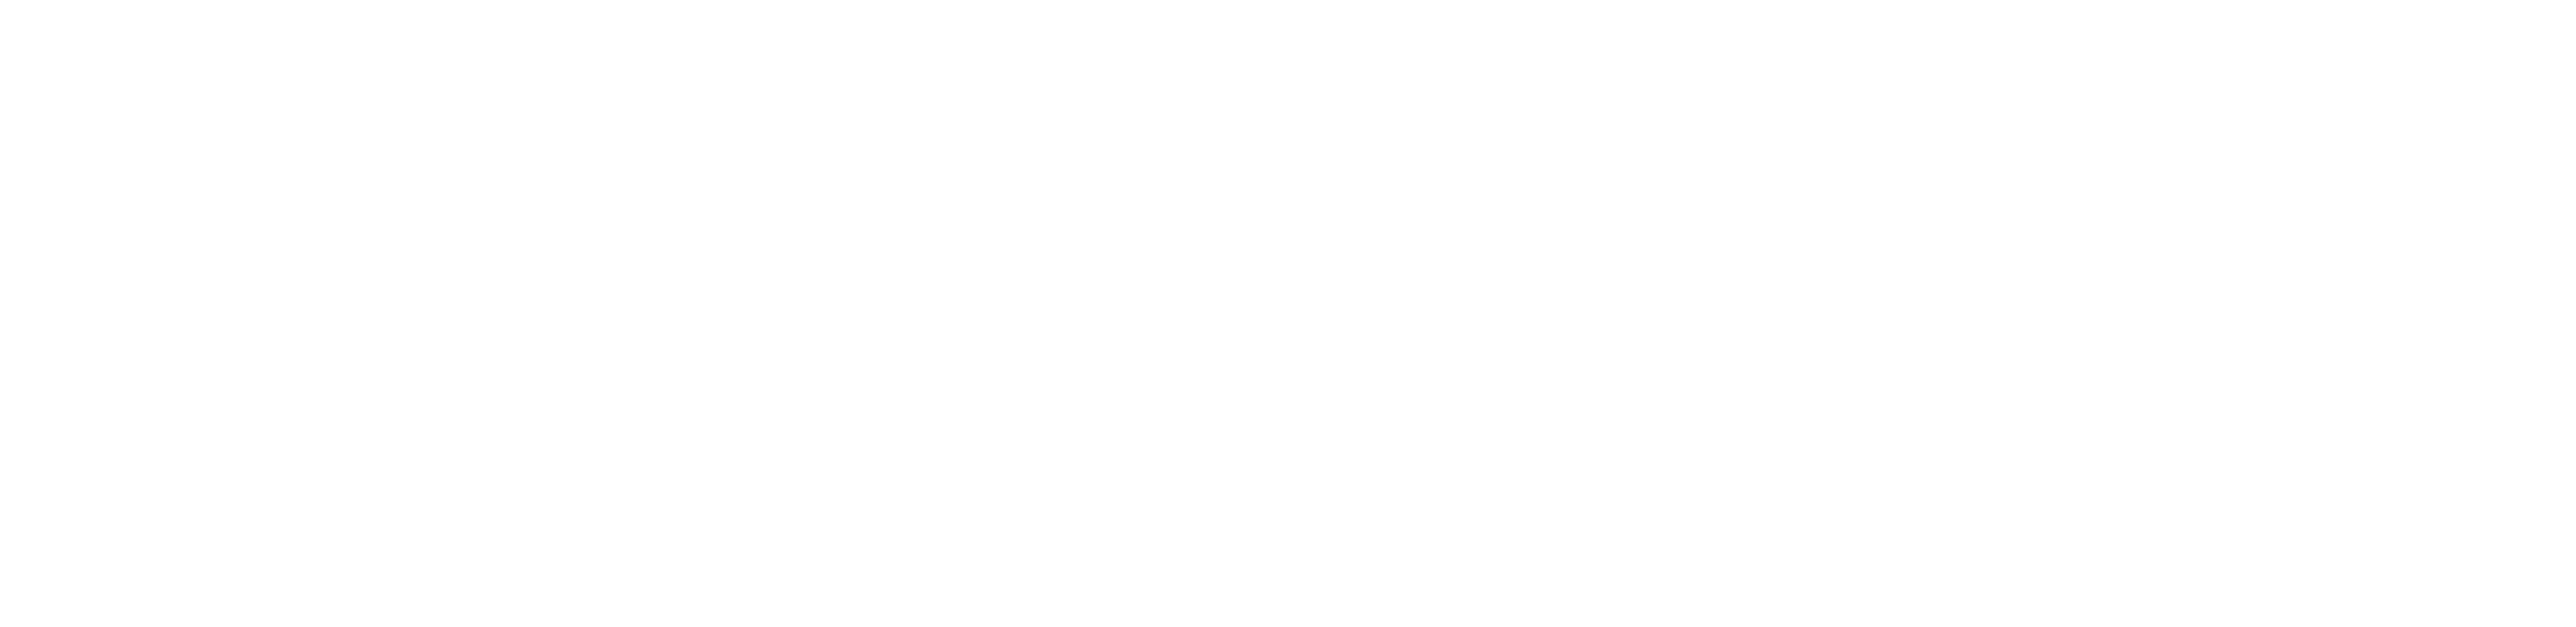 Suprema corte de justicia de la nación